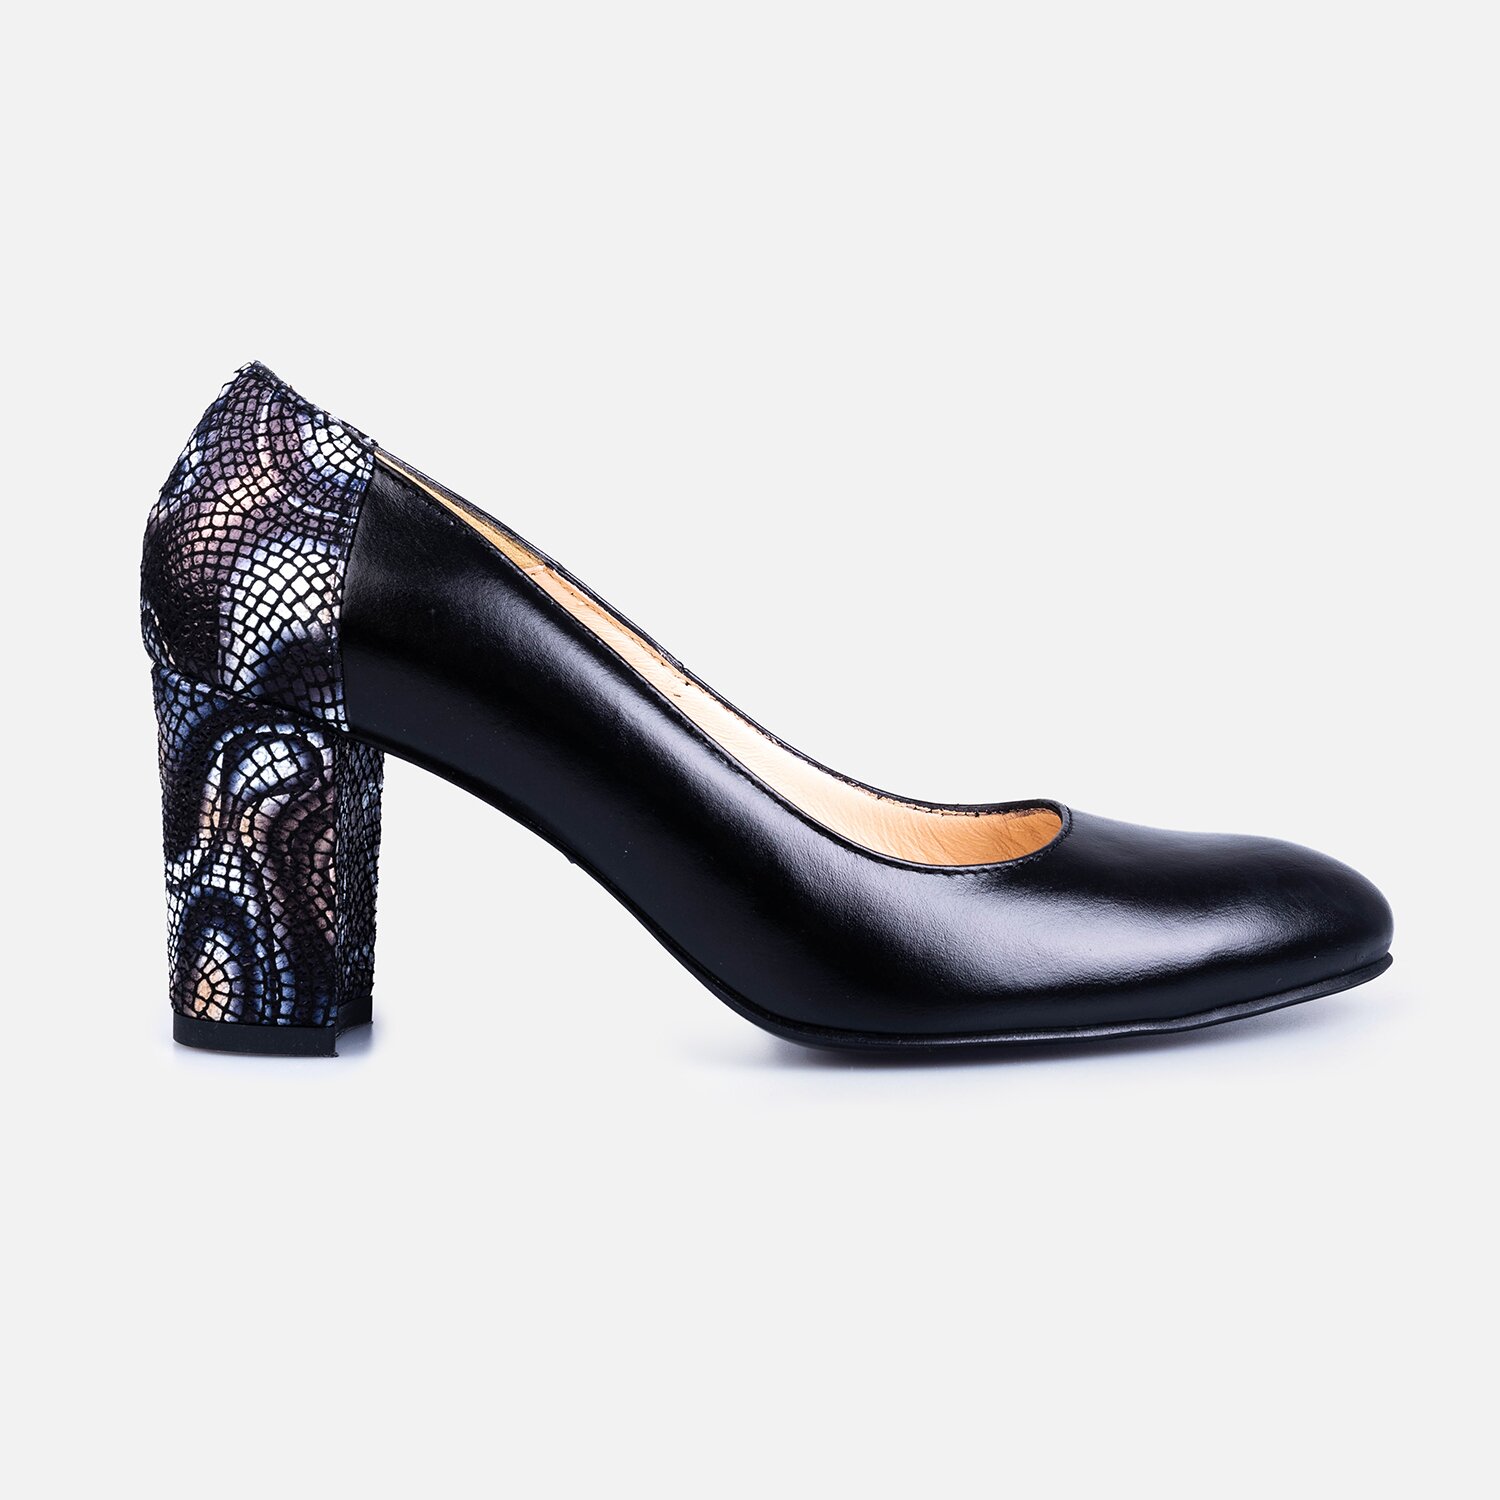 Pantofi eleganți damă din piele naturală - 174 Negru Box + Print